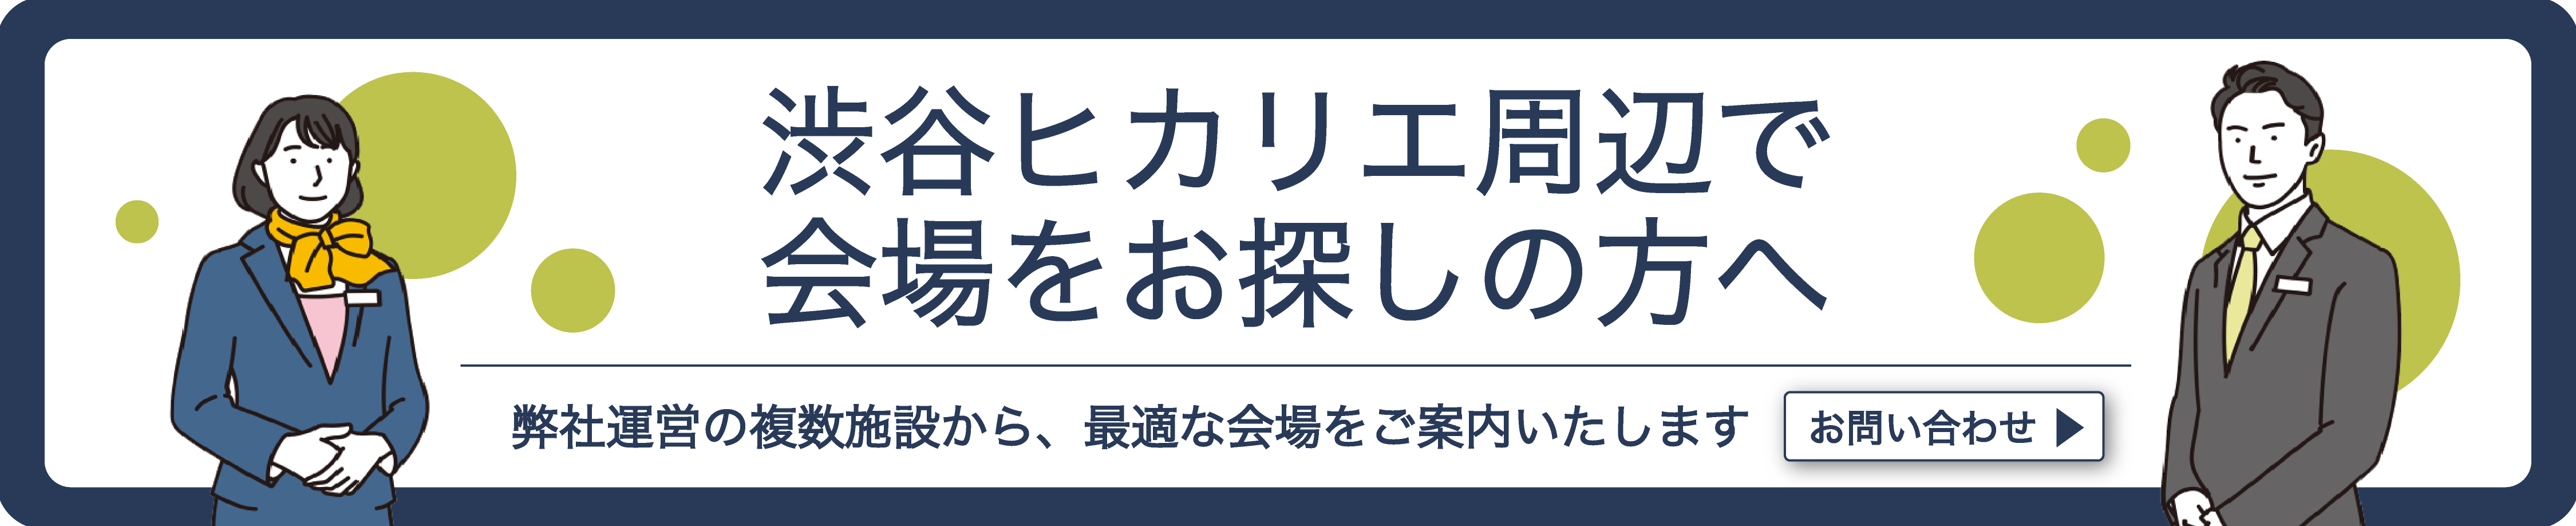 Shiubuya-erea-contact-banner0508